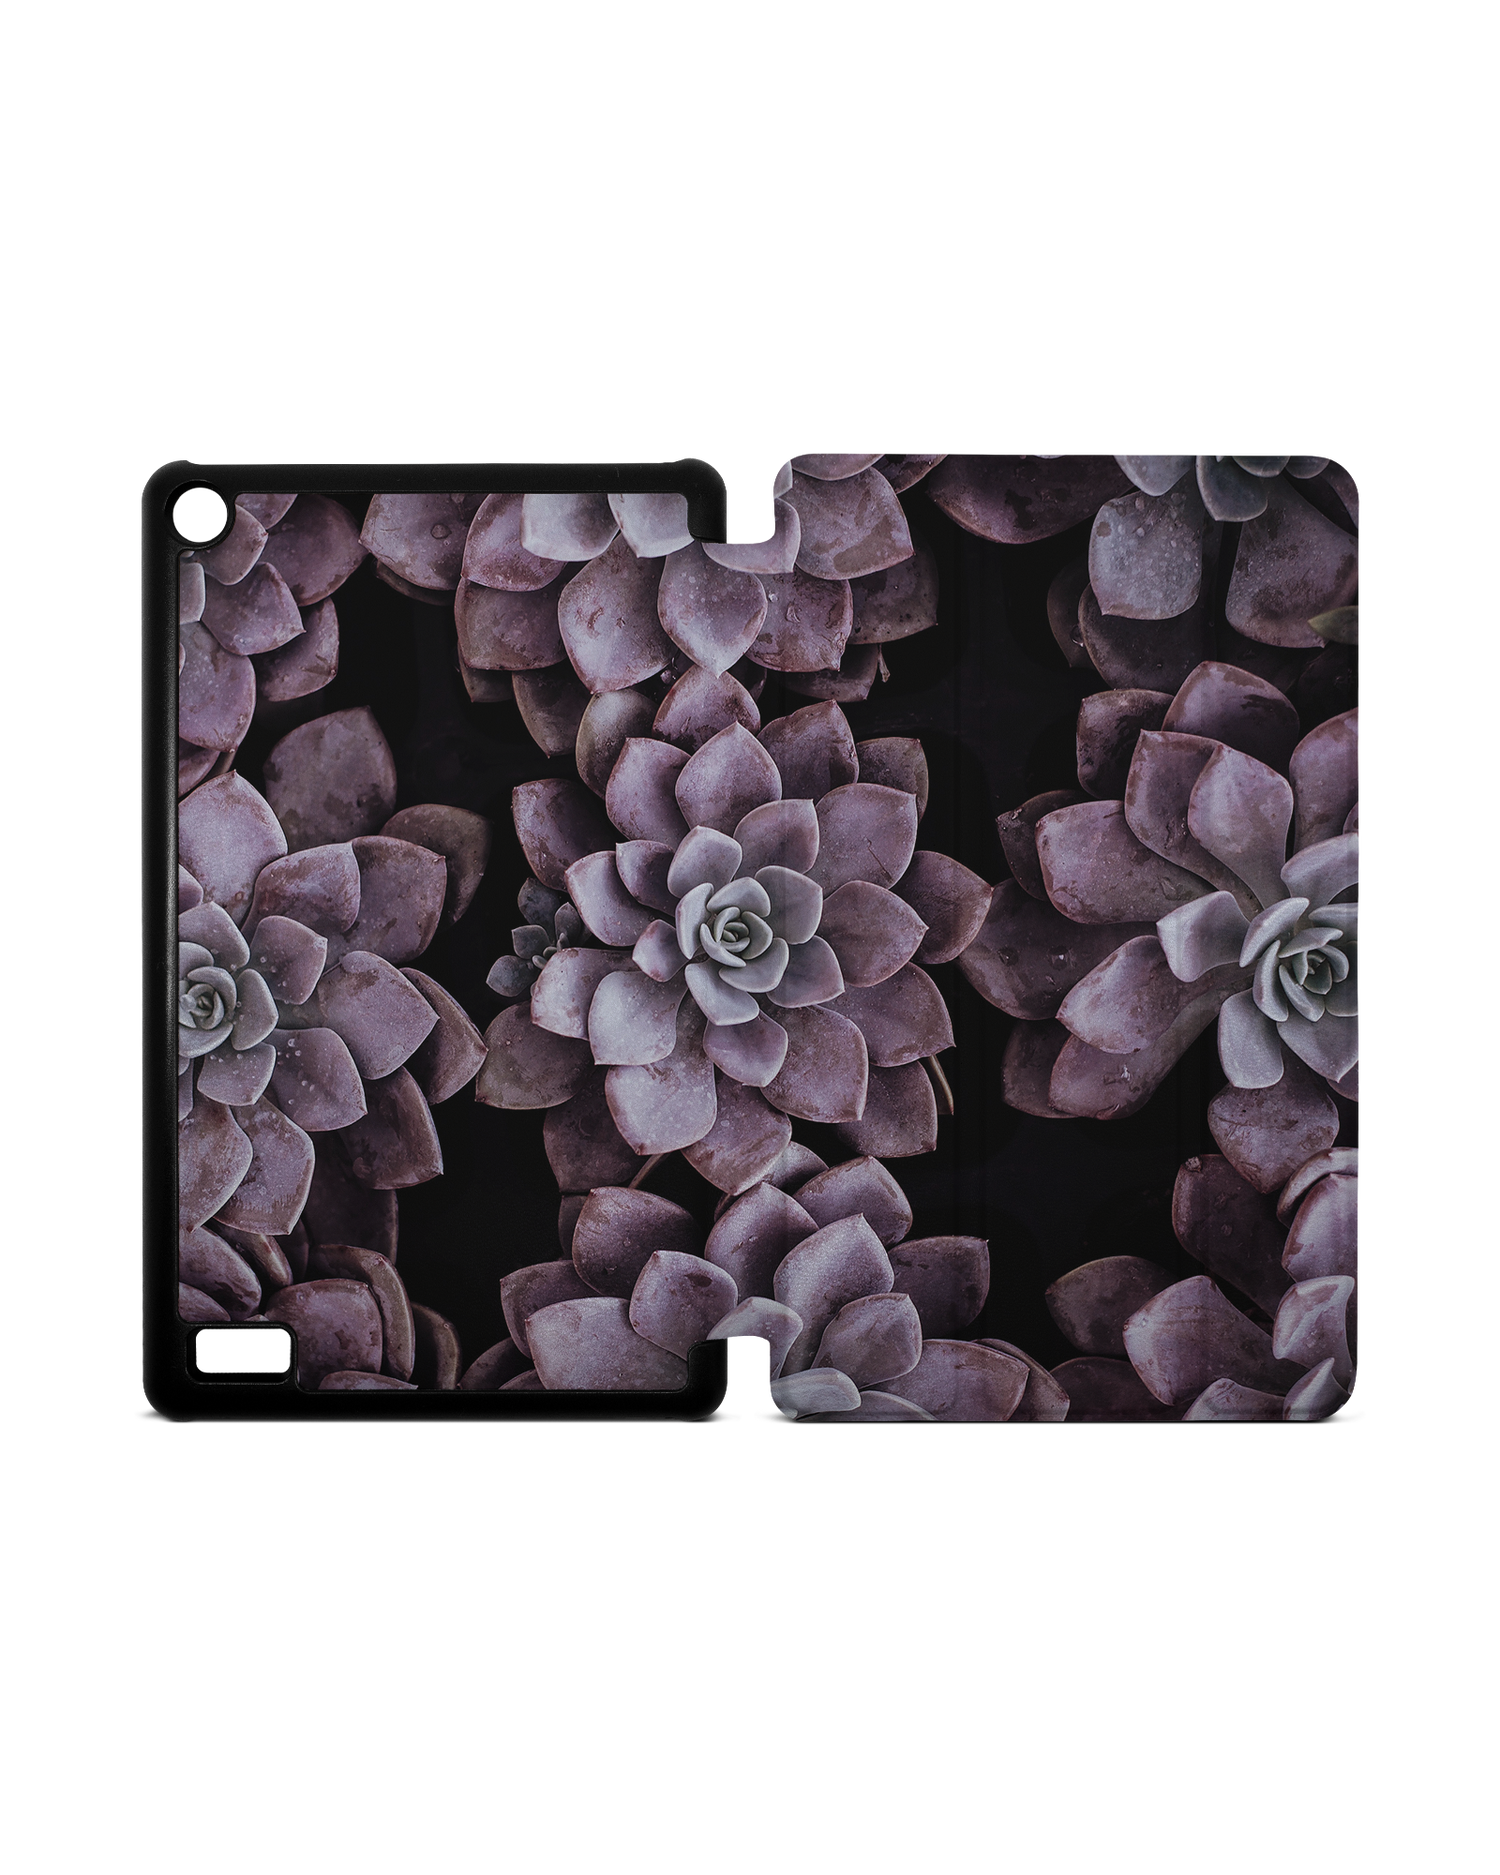 Purple Succulents Tablet Smart Case für Amazon Fire 7: Aufgeklappt